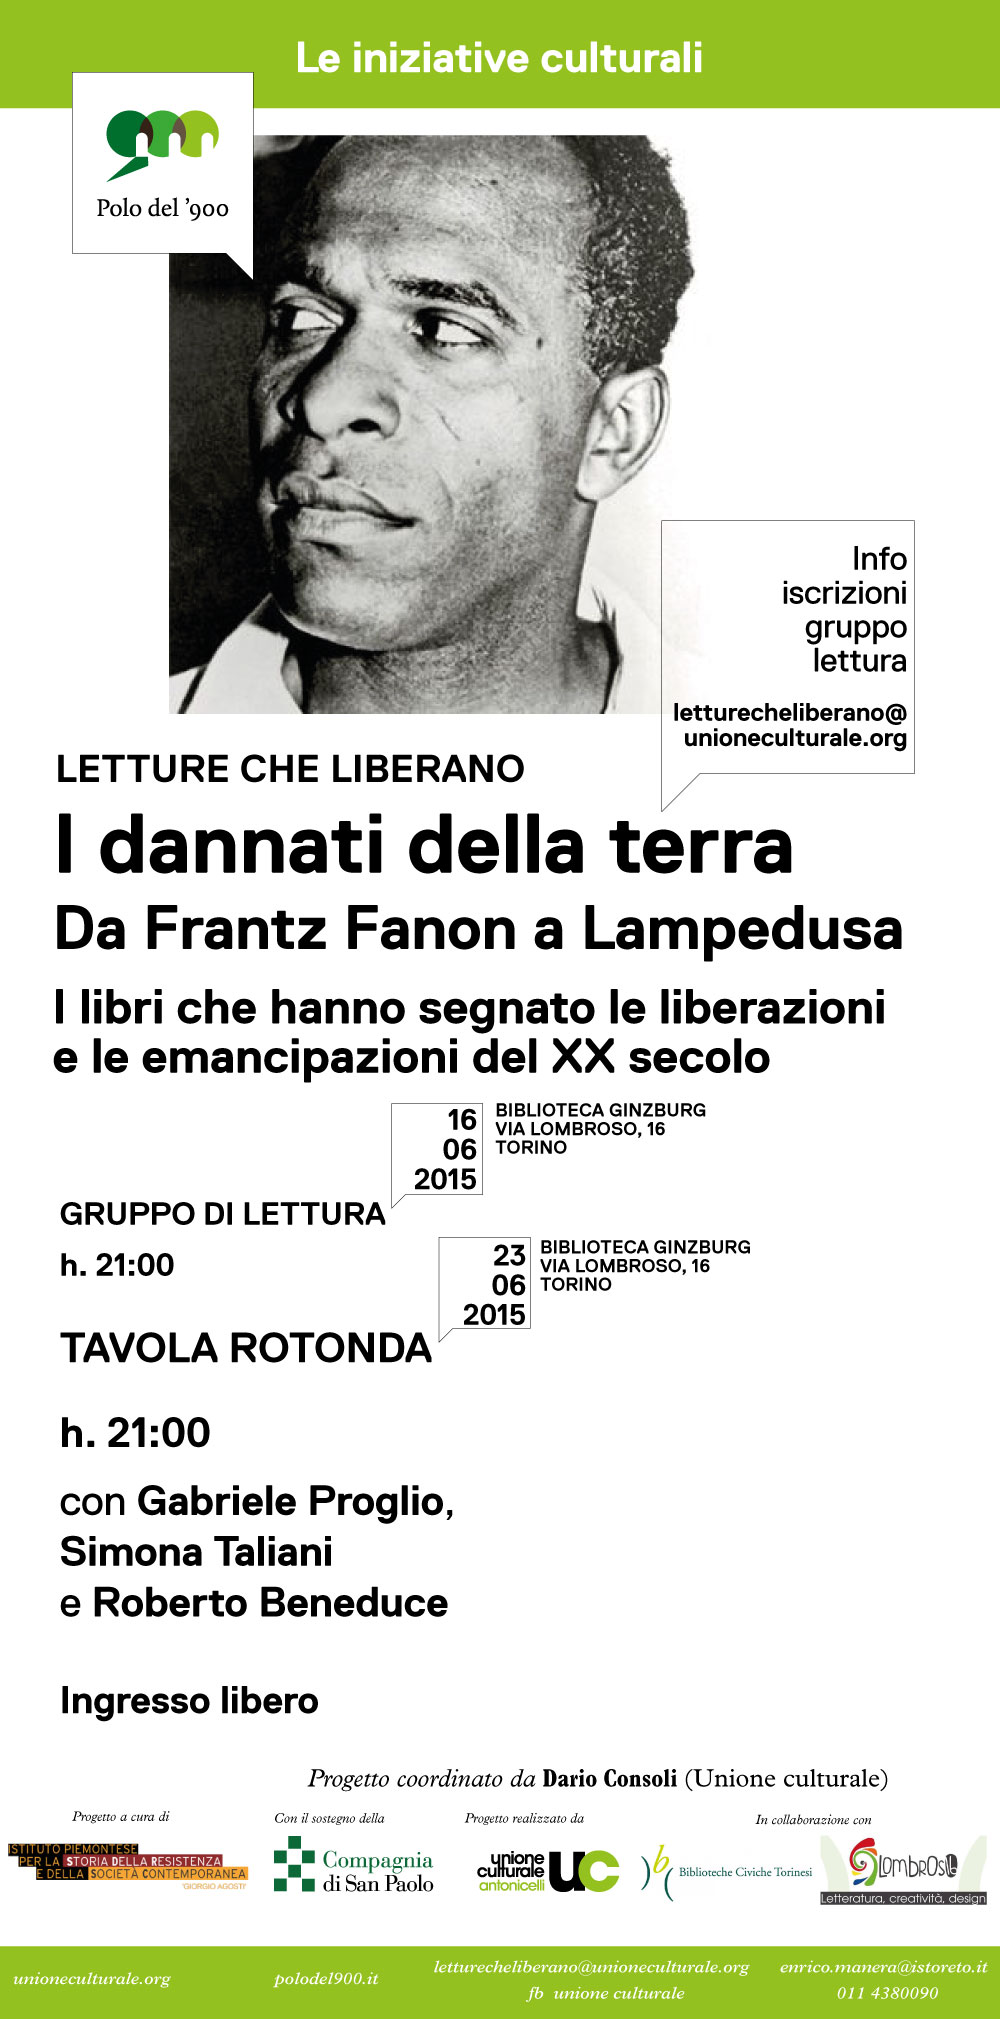 02-06_Polo_del_900-Liberazioni-locandina_420x208mm(6)